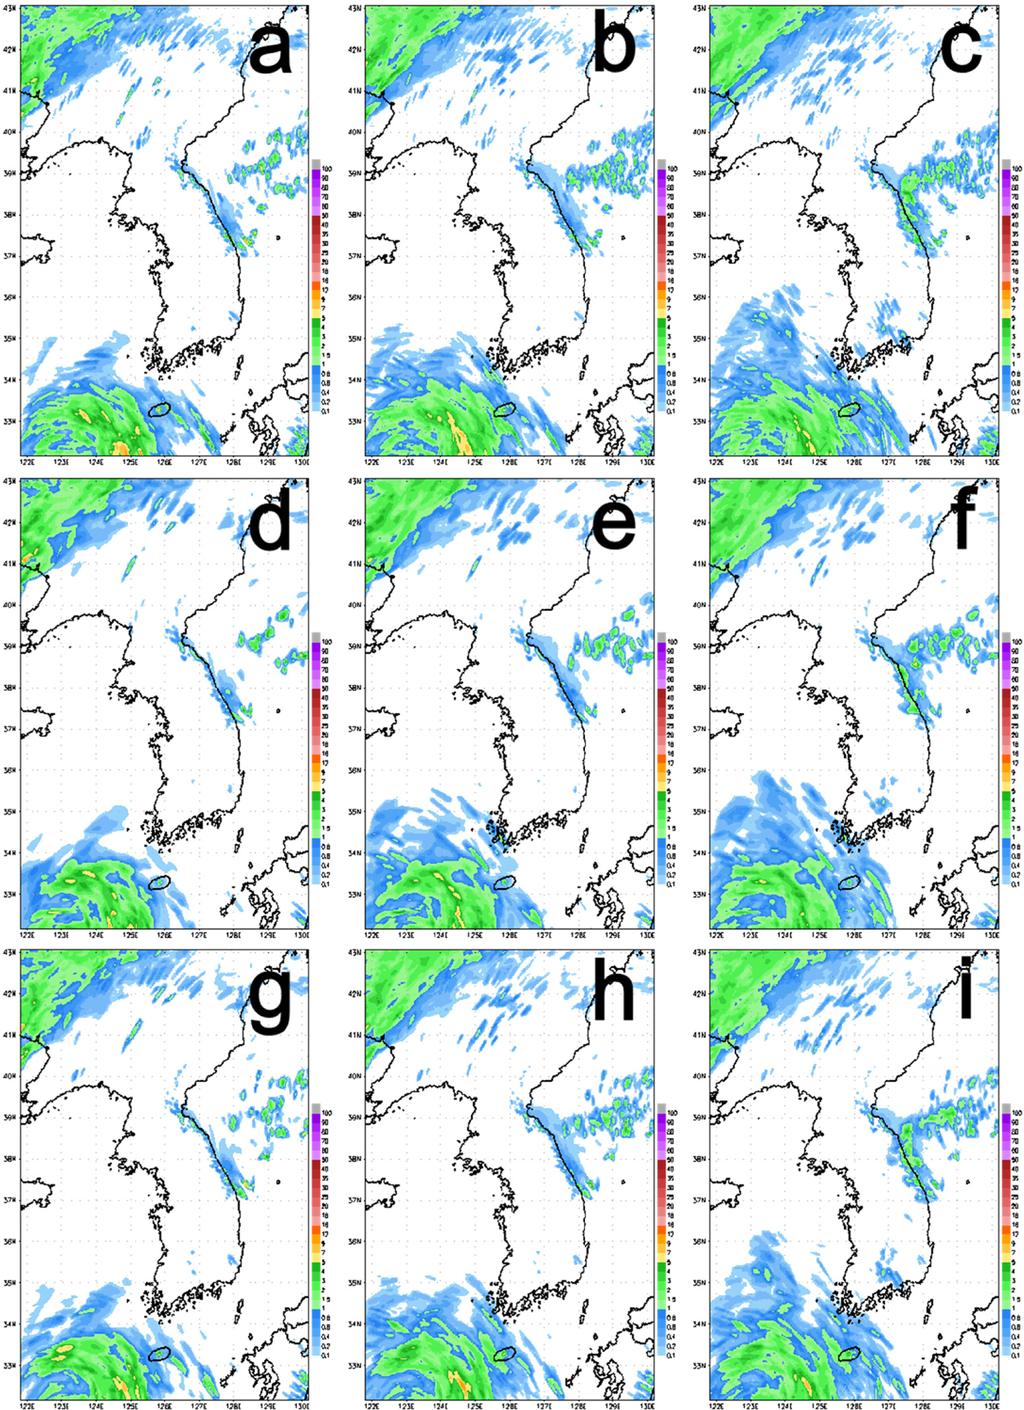 76 기상청 고해상도 국지 앙상블 예측 시스템 구축 및 성능 검증 Fig. 9. Ensemble mean of 1 hr accumulated precipitation forecasts for each member and resolution at 0000 UTC Aug. 01 (top row: 1.